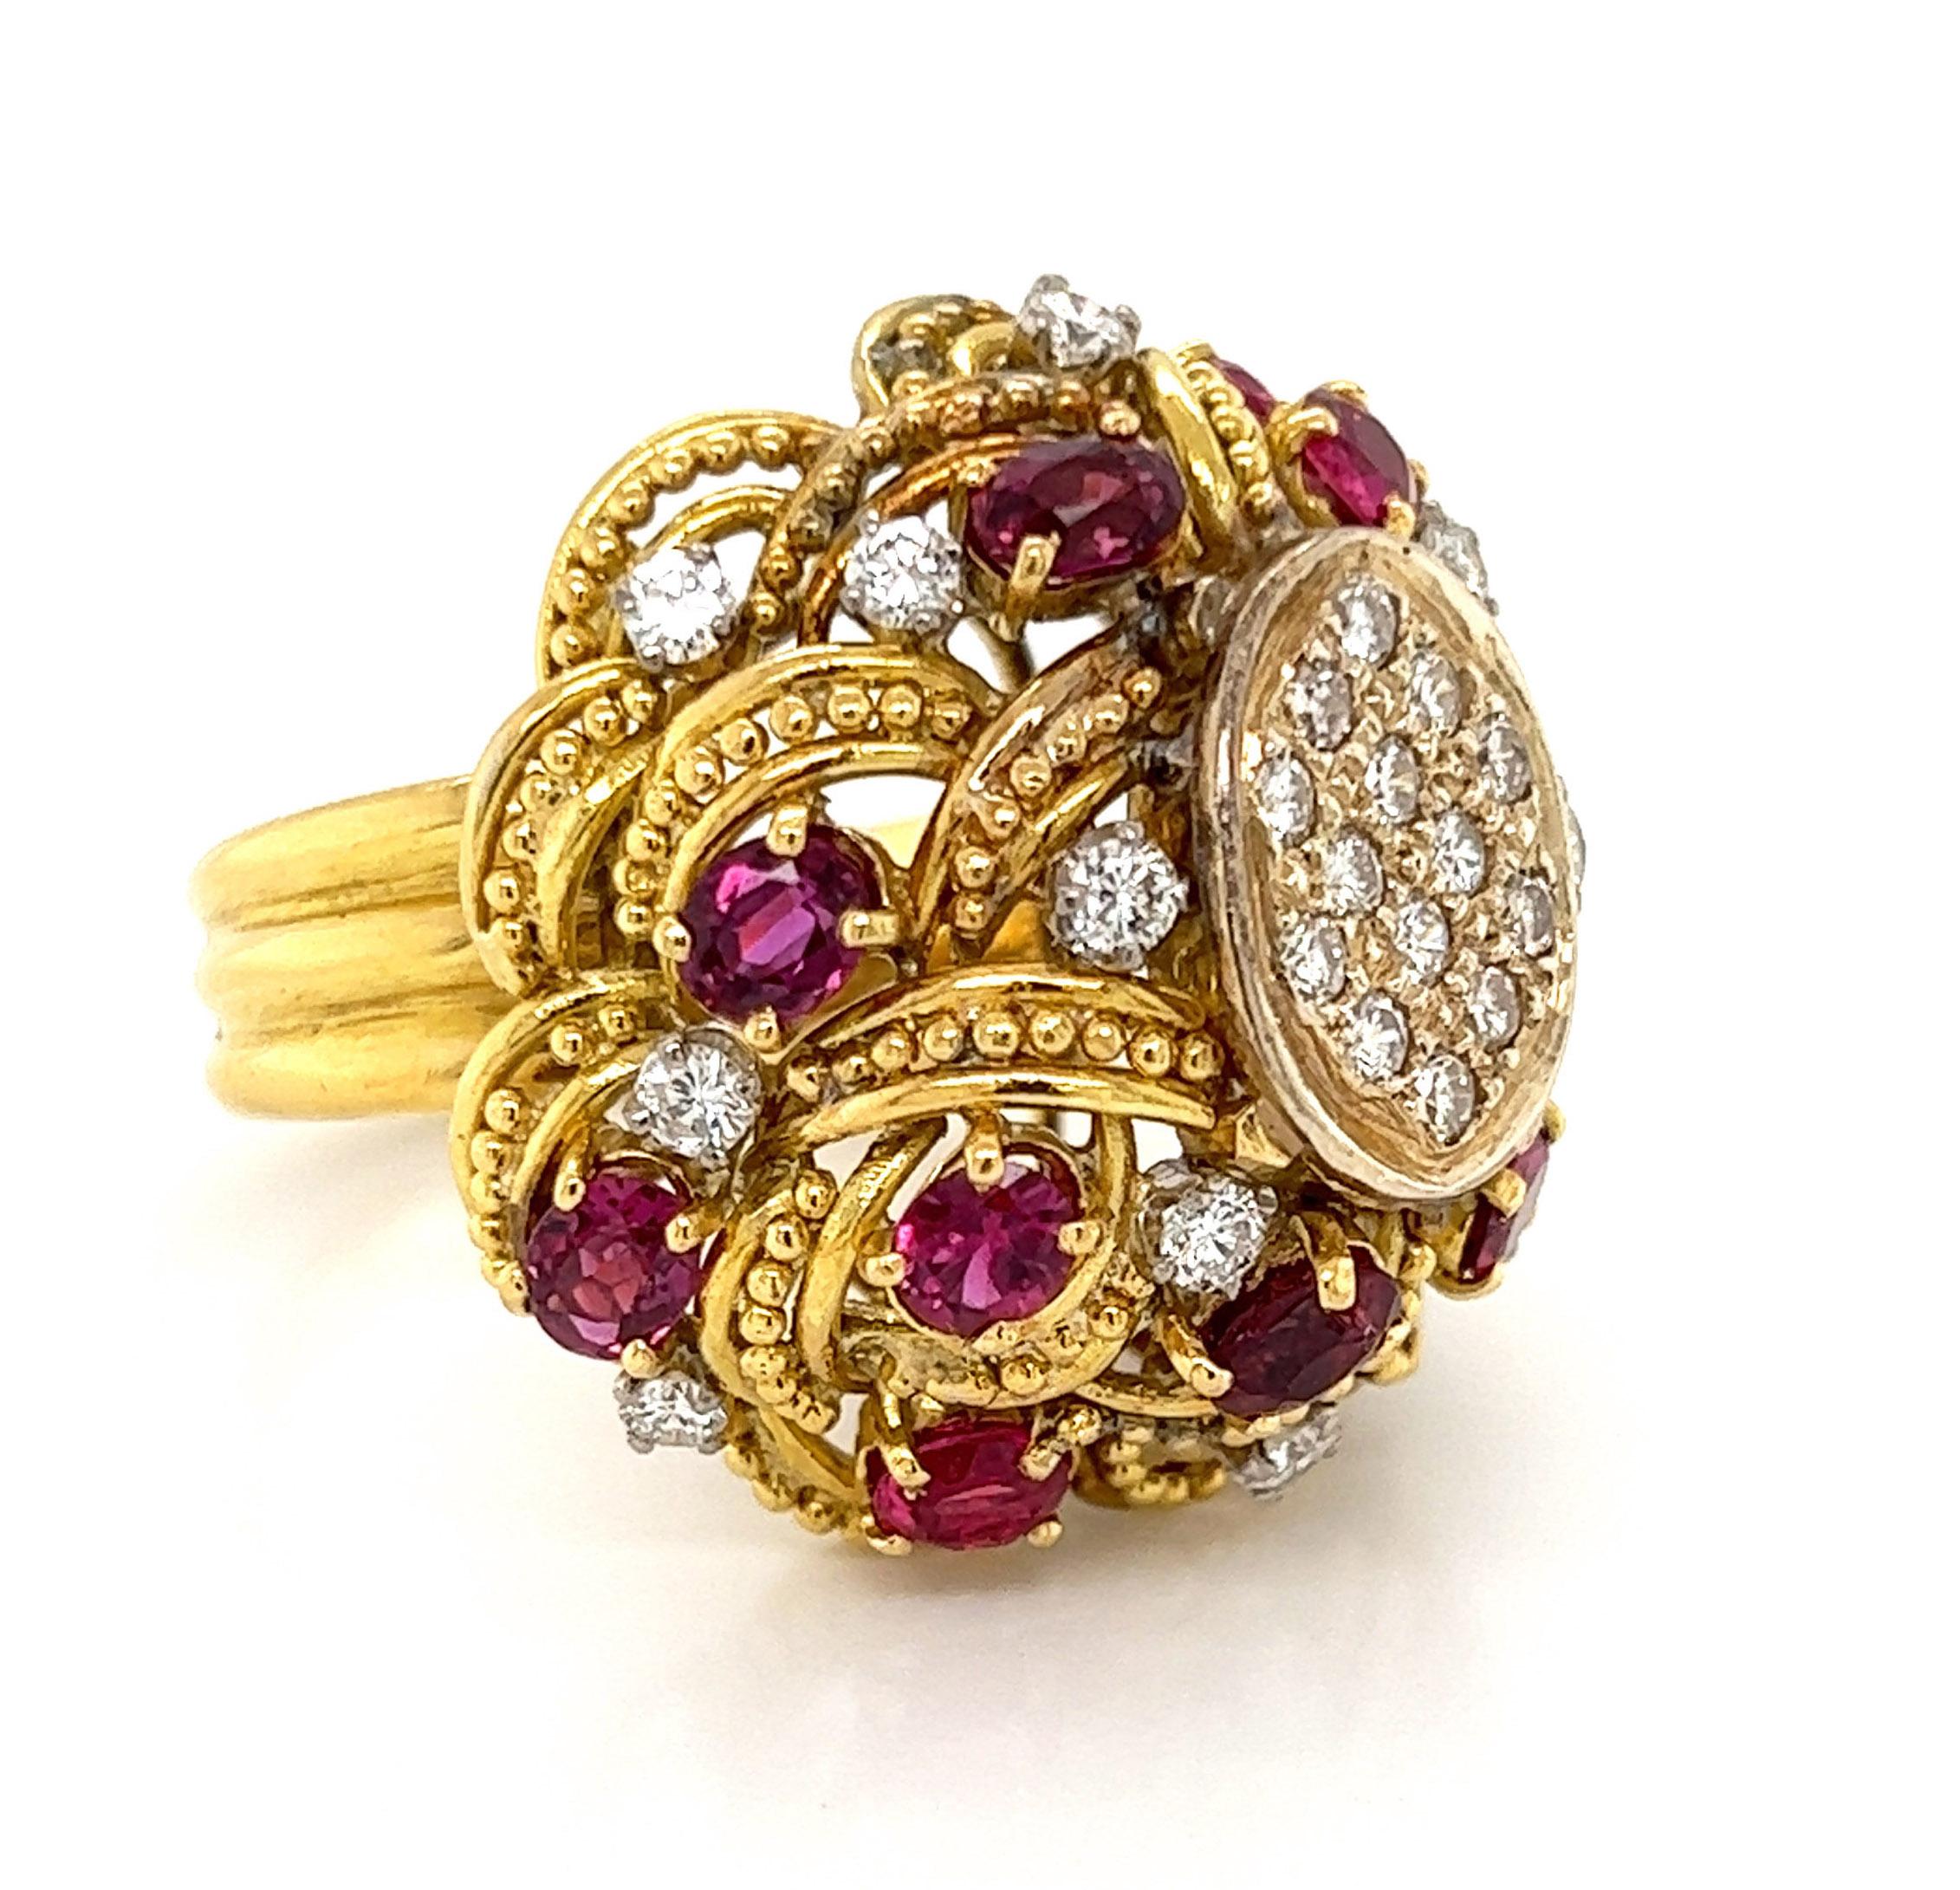 Dieser besondere Ring ist aus 18k Gelbgold mit einer großen Kuppel Form aus geschichteten Spitze wie Muster mit kleinen Perlen über jede Schleife und hat kleine offene Raum zwischen jeder Schicht gefertigt. Rund um die Kuppel befinden sich Rubine